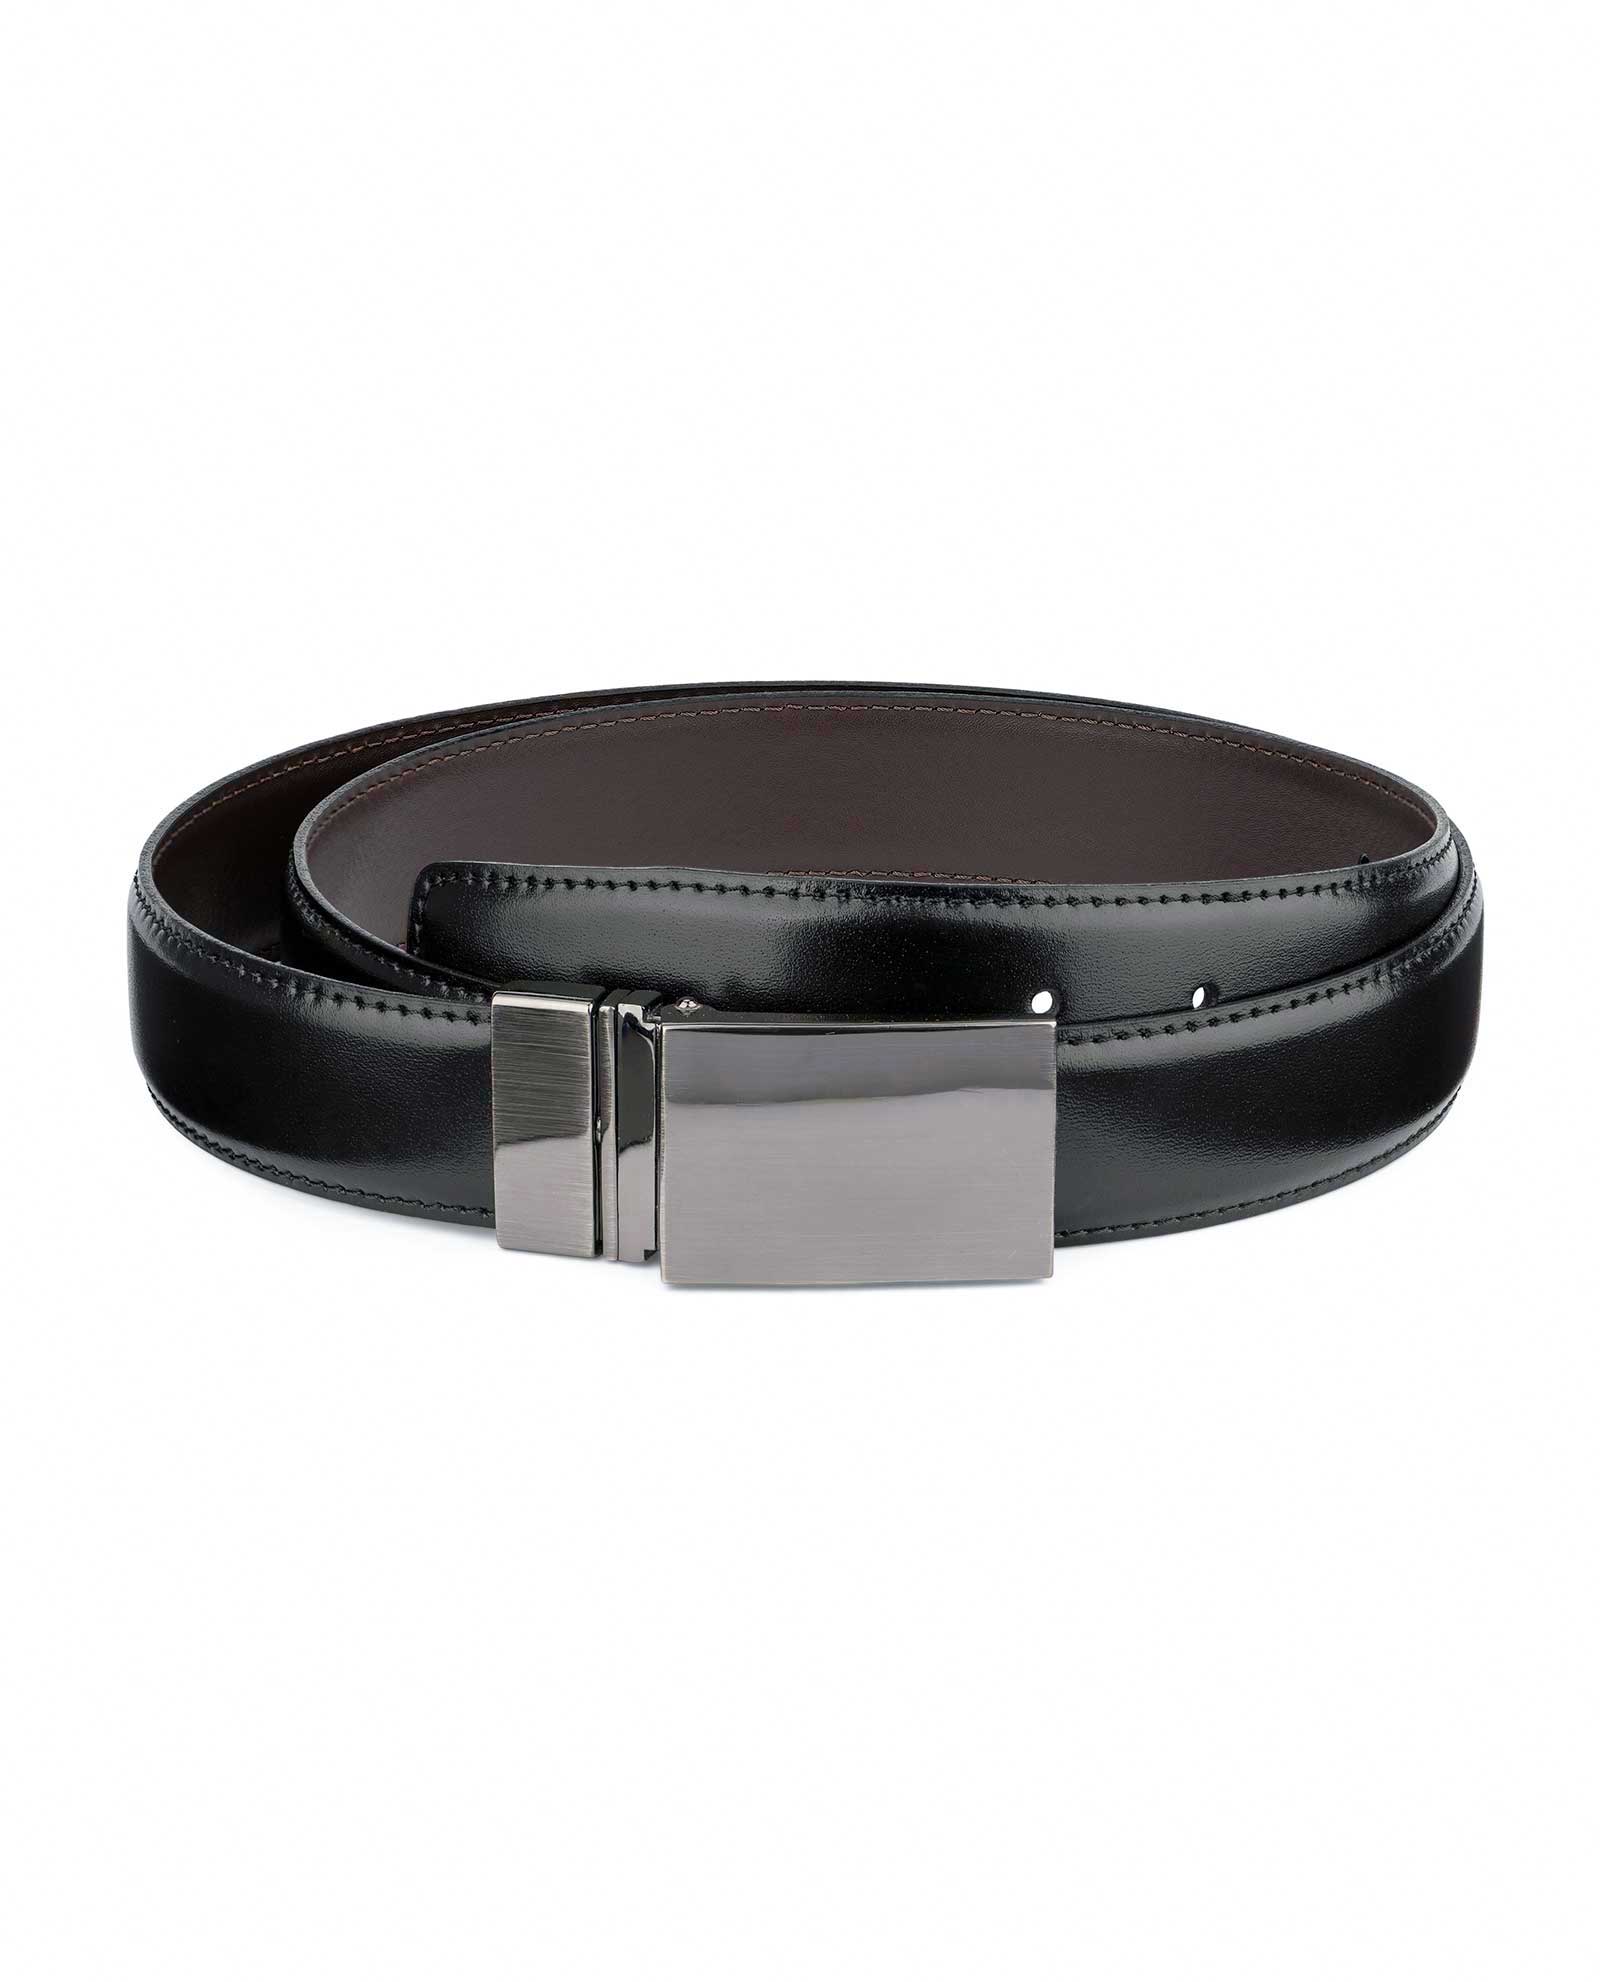 Buy Swivel Buckle Two Sided Leather Belt | LeatherBeltsOnline.com